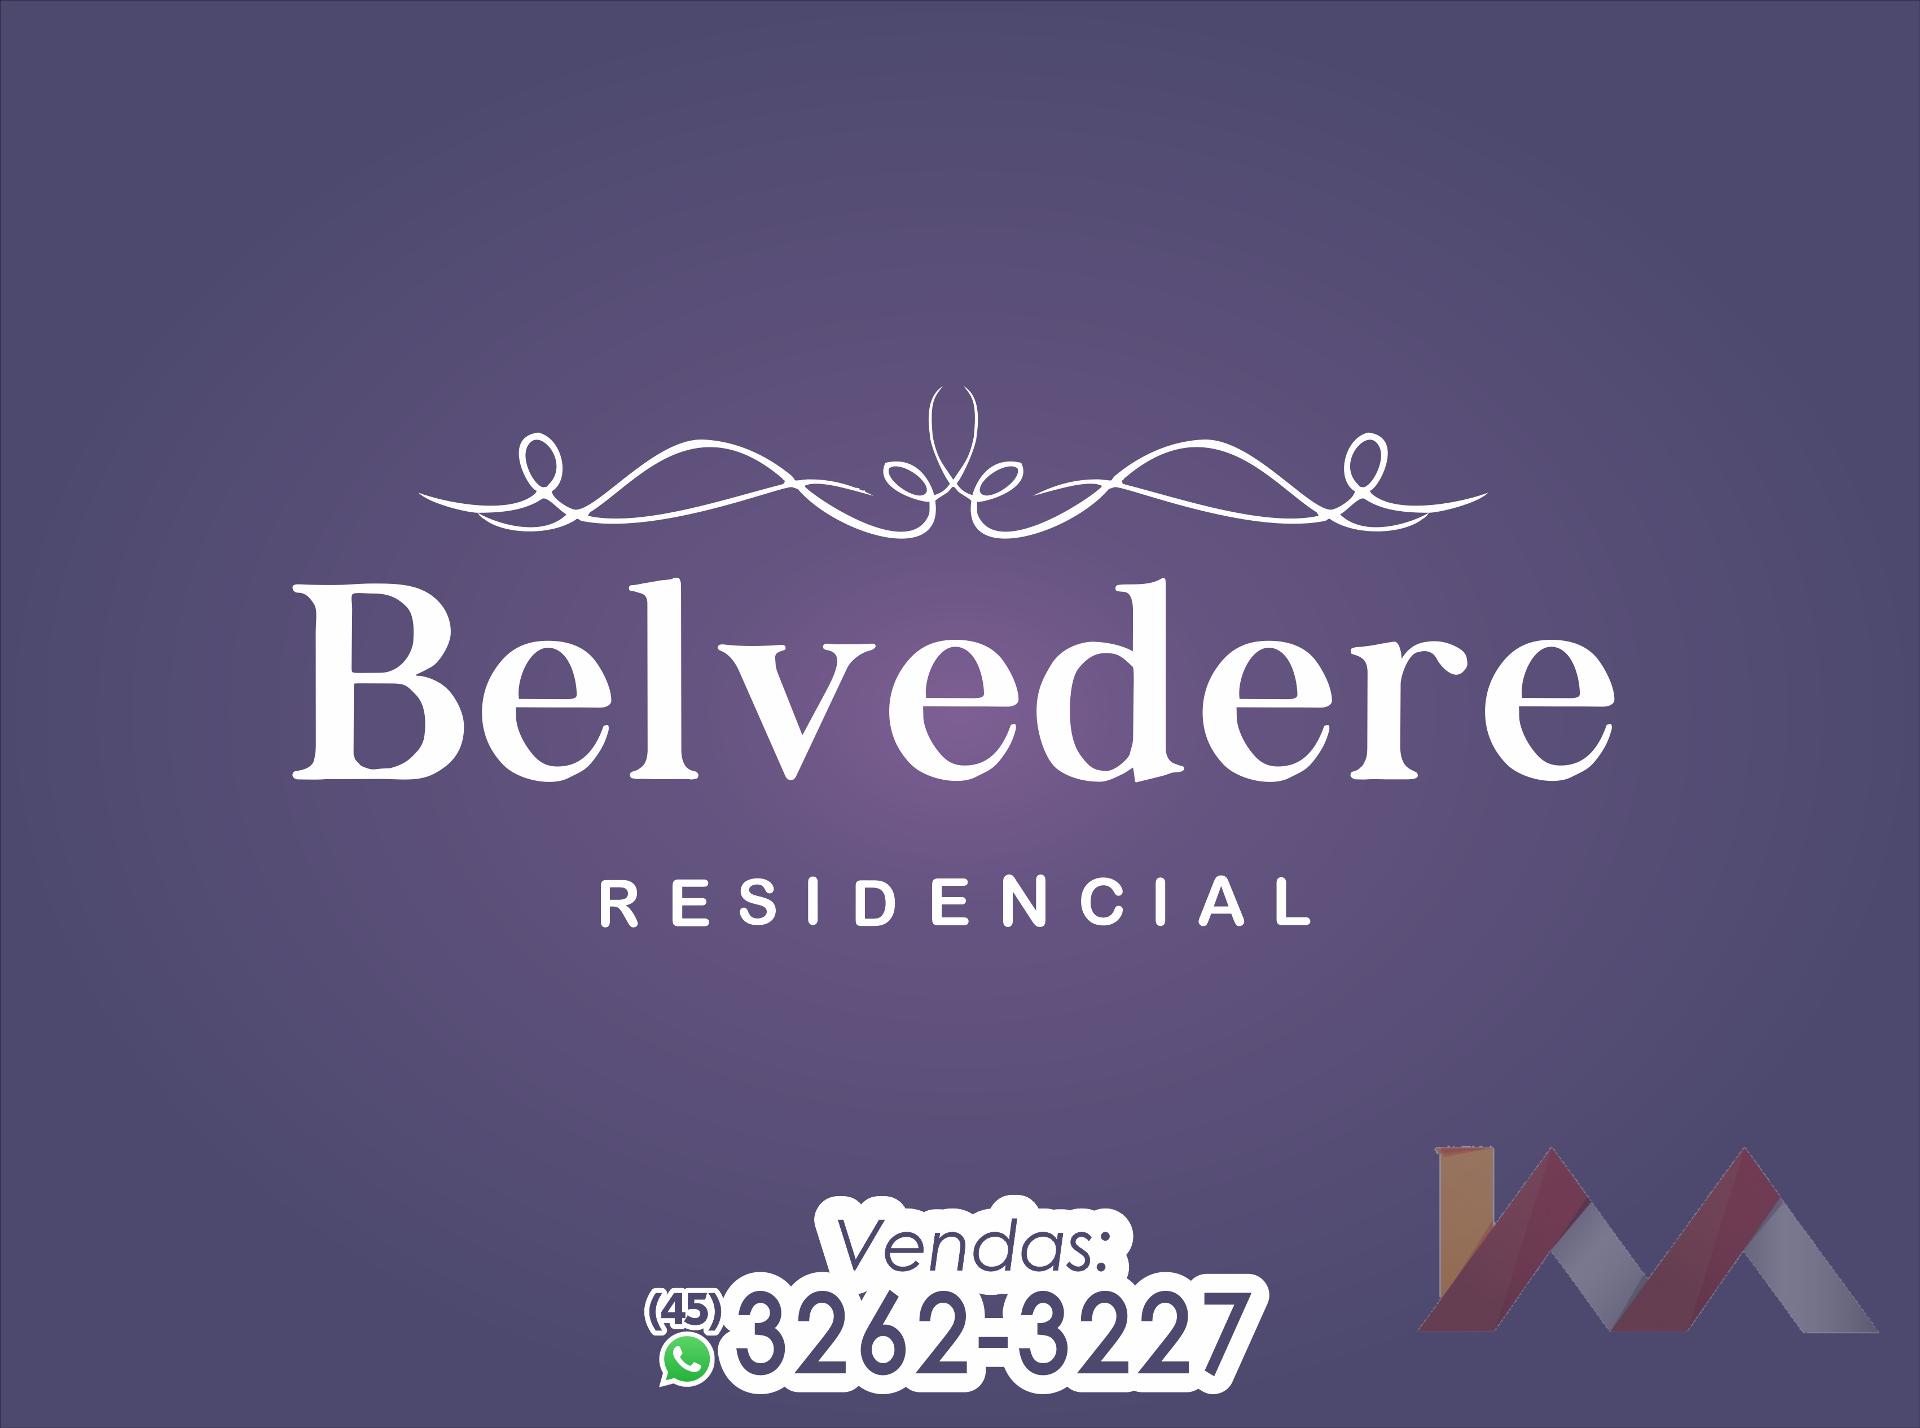 Apartamento 102 do Residencial Belvedere